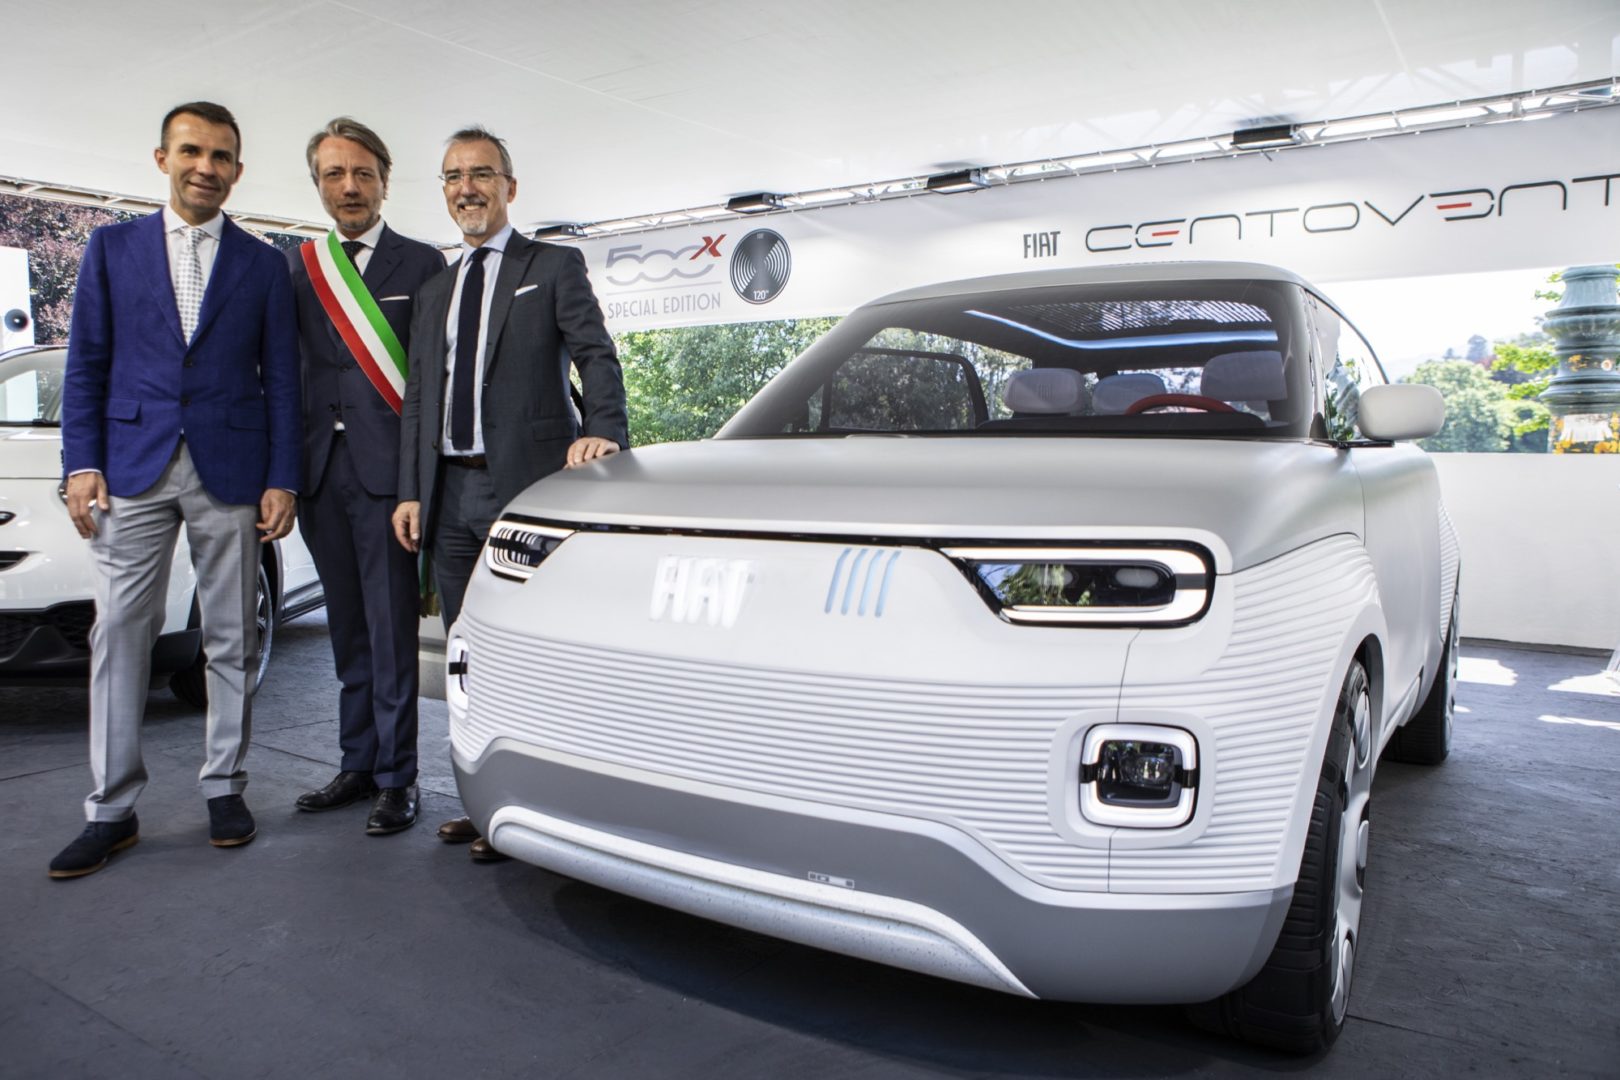 Parco del Valentino 2019, Alberto Sacco, Andrea Levy e Pietro Gorlier con Fiat Centoventi